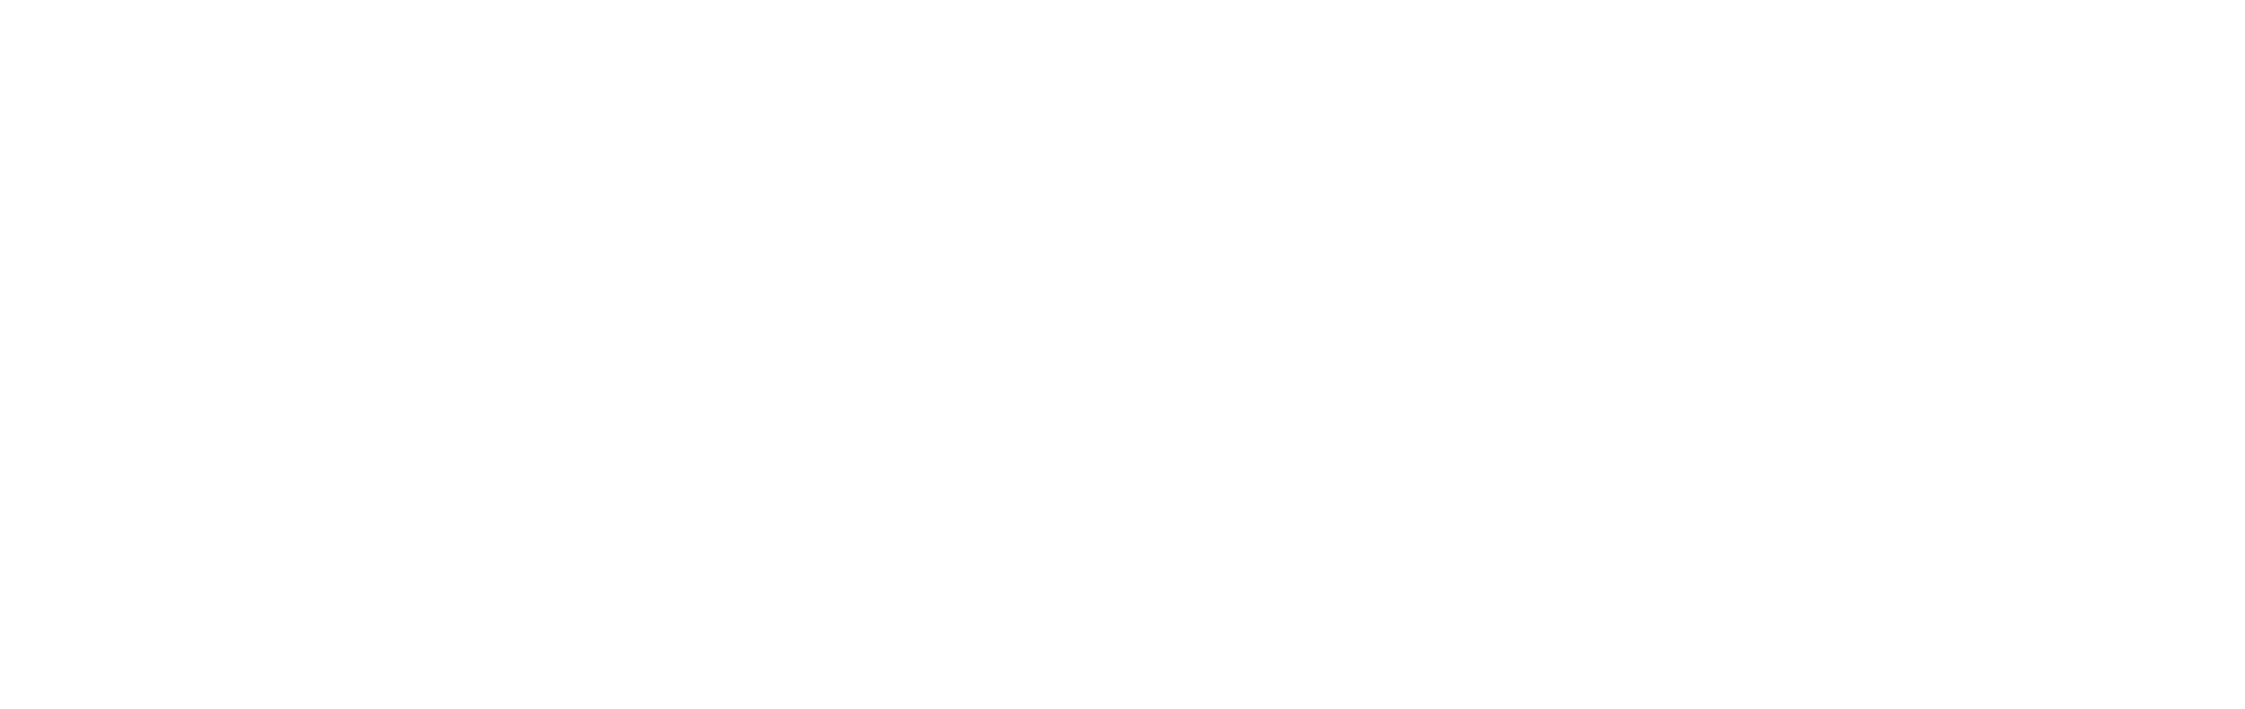 Datrix logo />
                                    </a>
                                </li>
                                <li>
                                    <a href=